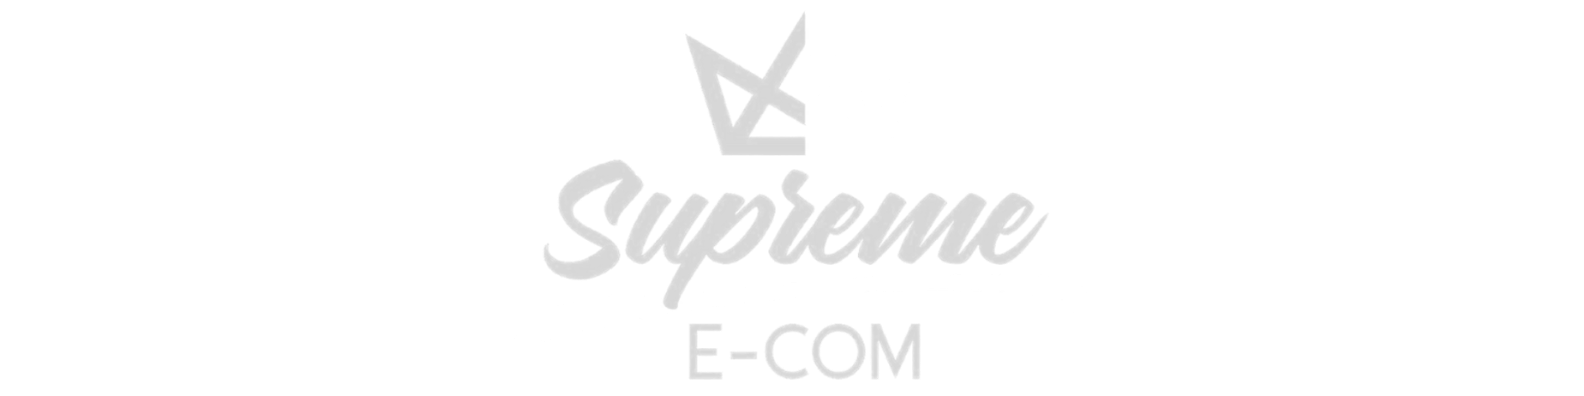 Supreme Ecom - www.supremeecom.com/mentorship